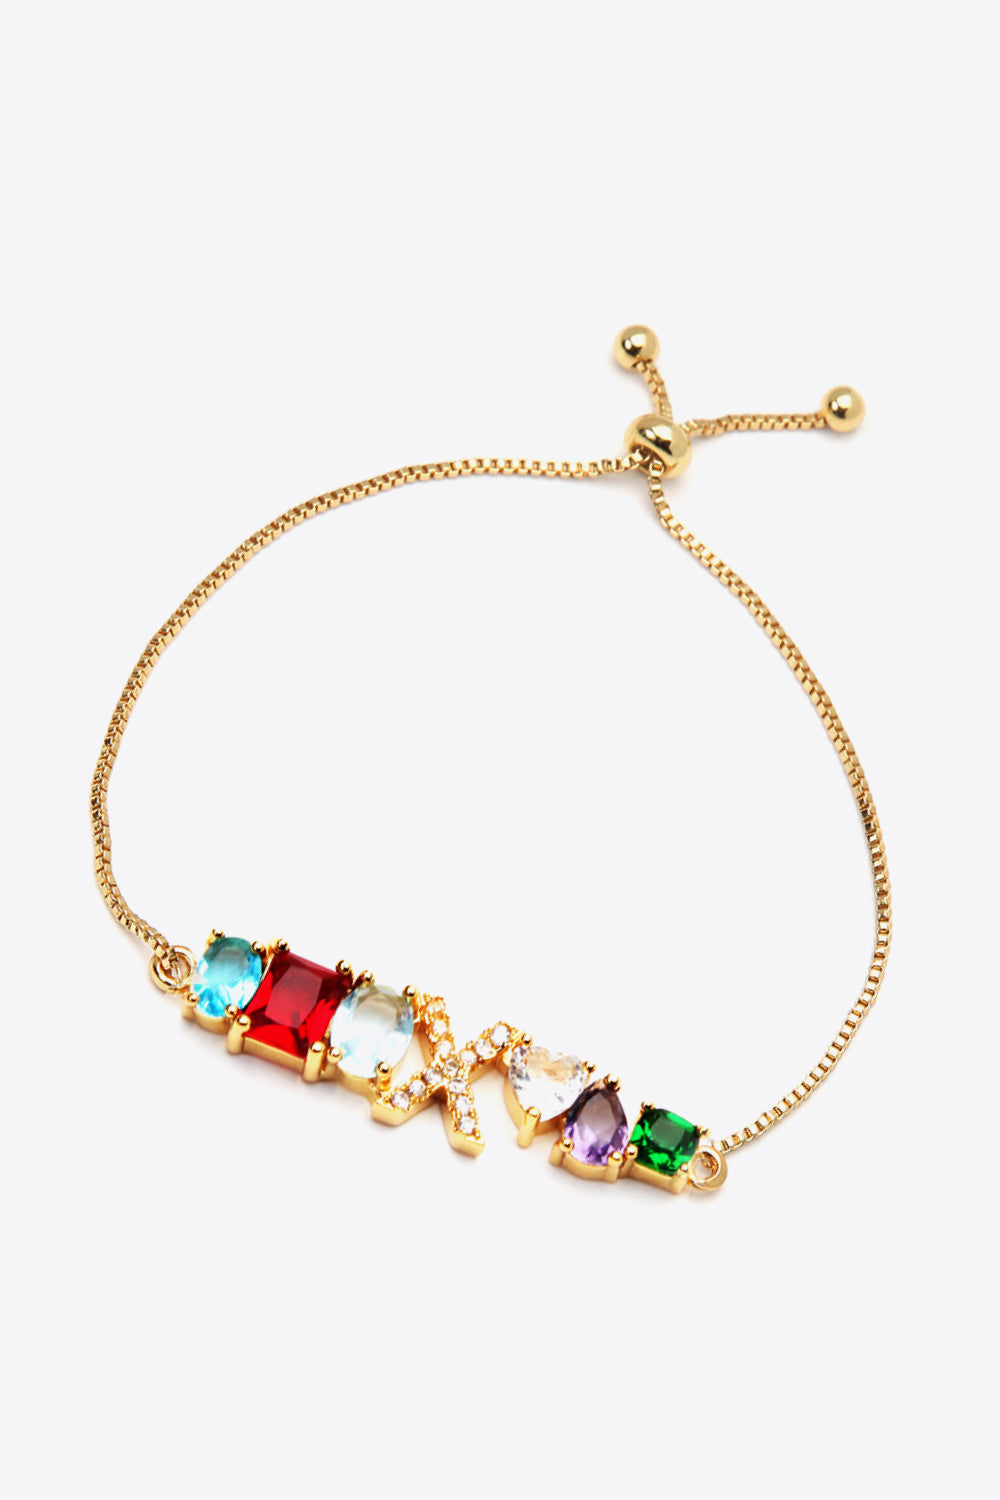 U to Z Zircon Bracelet - Women’s Jewelry - Bracelets - 11 - 2024